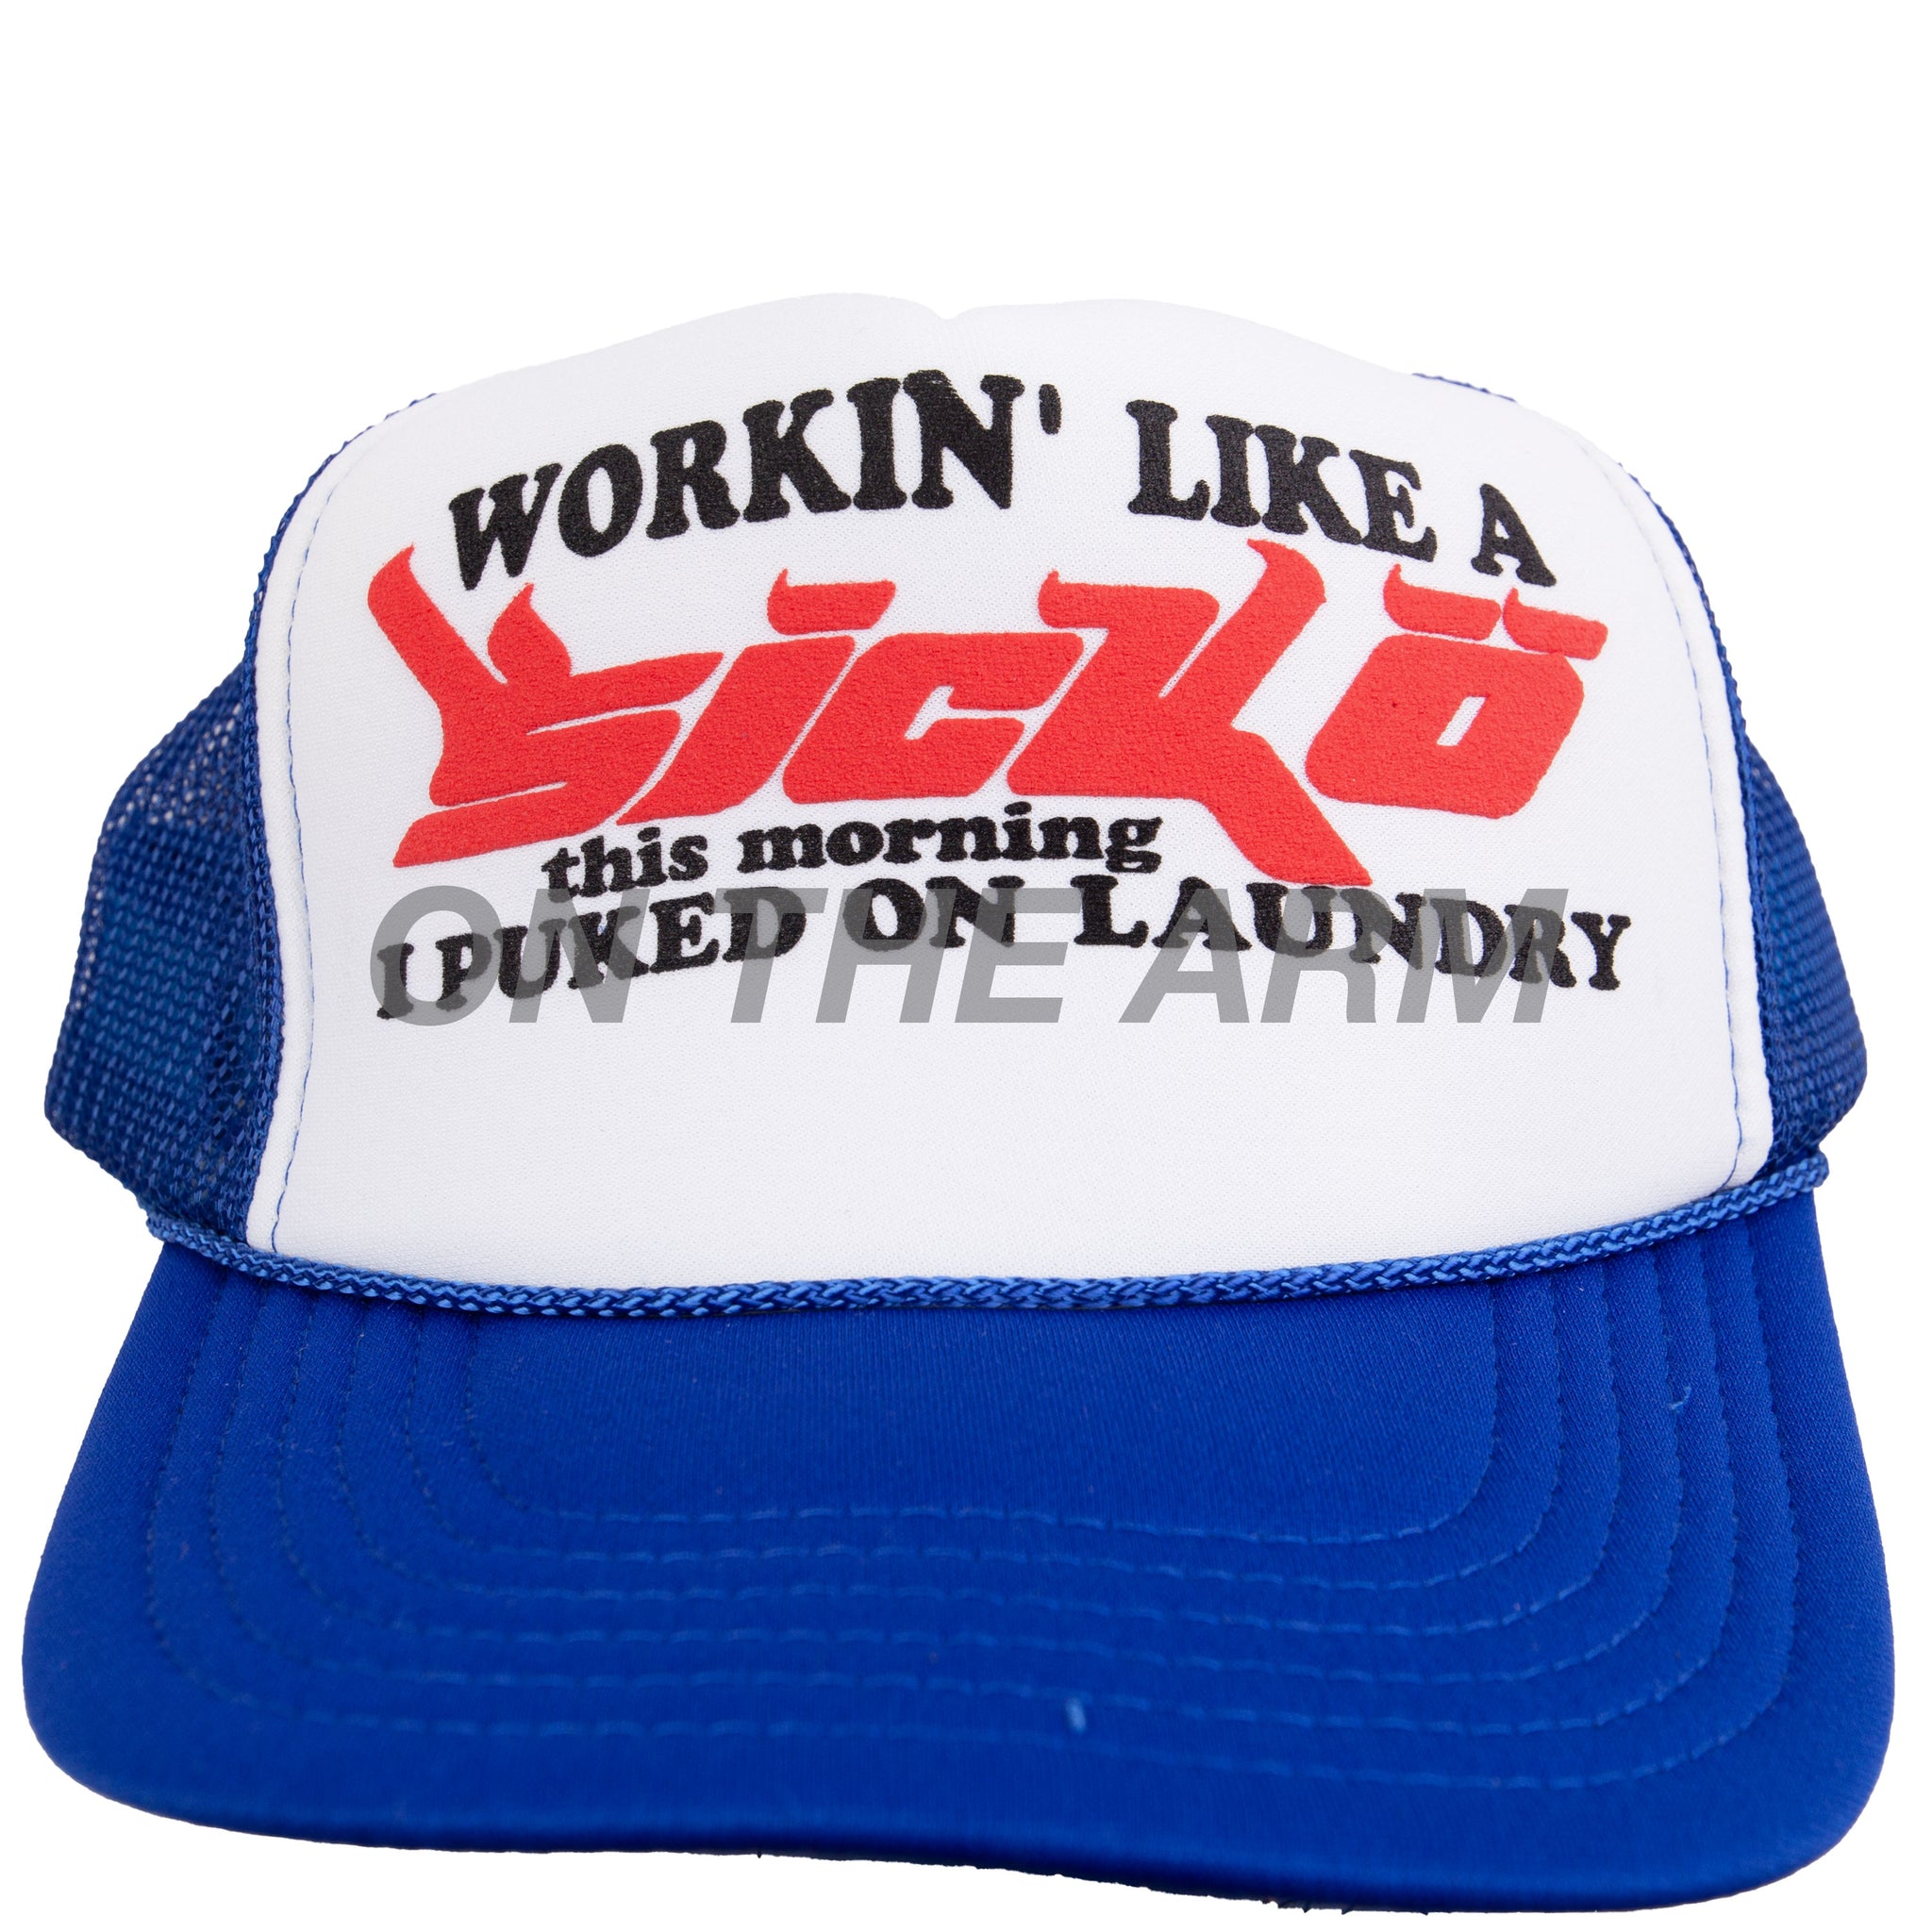 Sicko Blue Laundry Trucker Hat